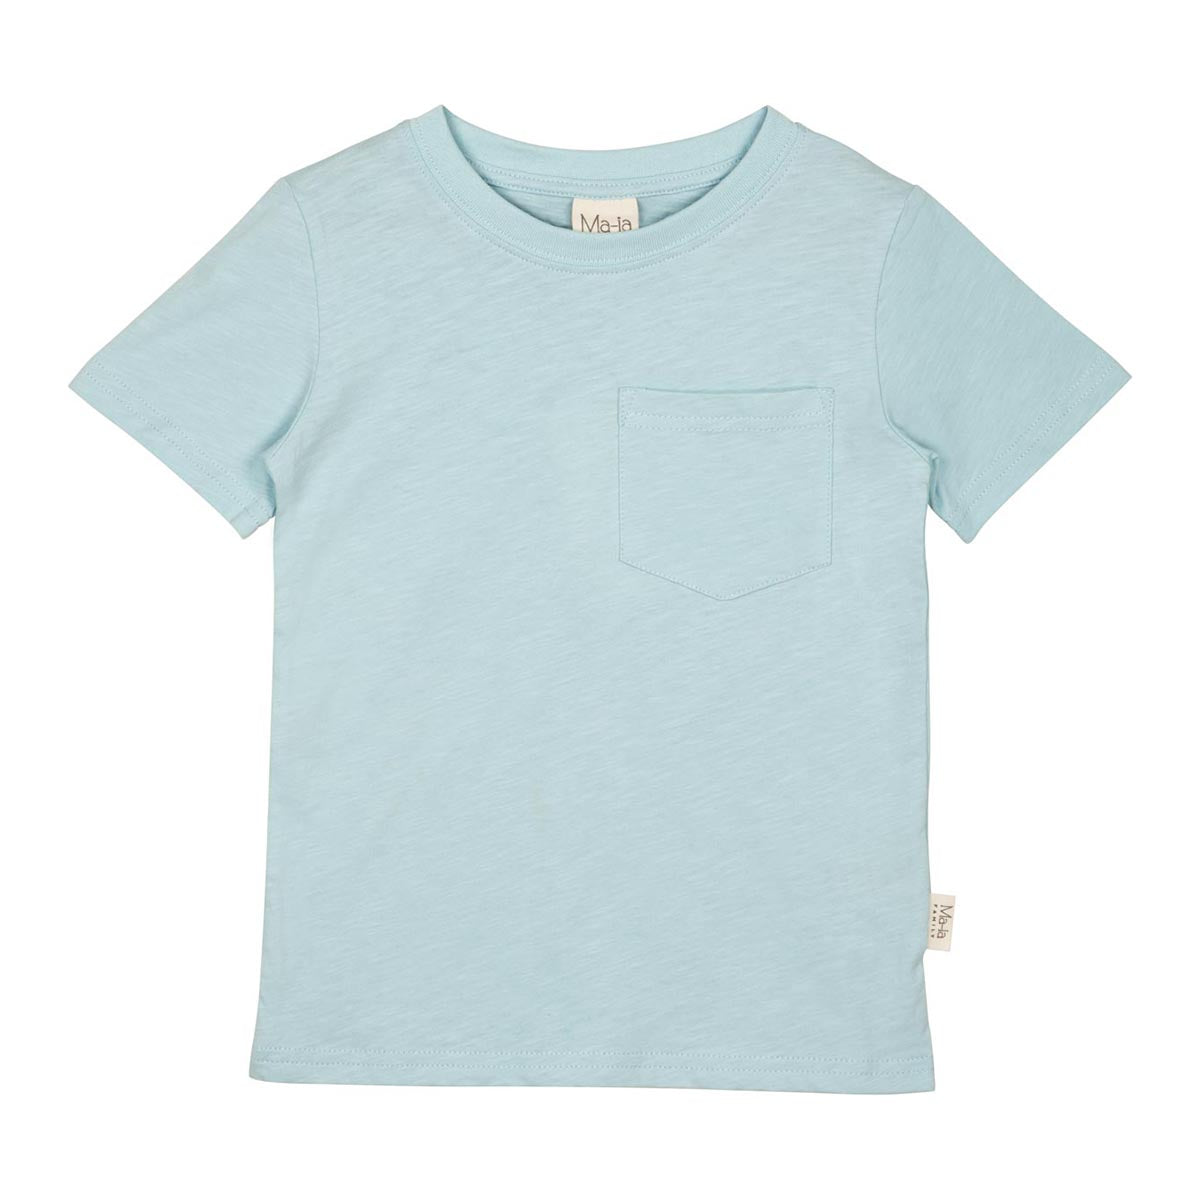 Otto T-Shirt, light blue